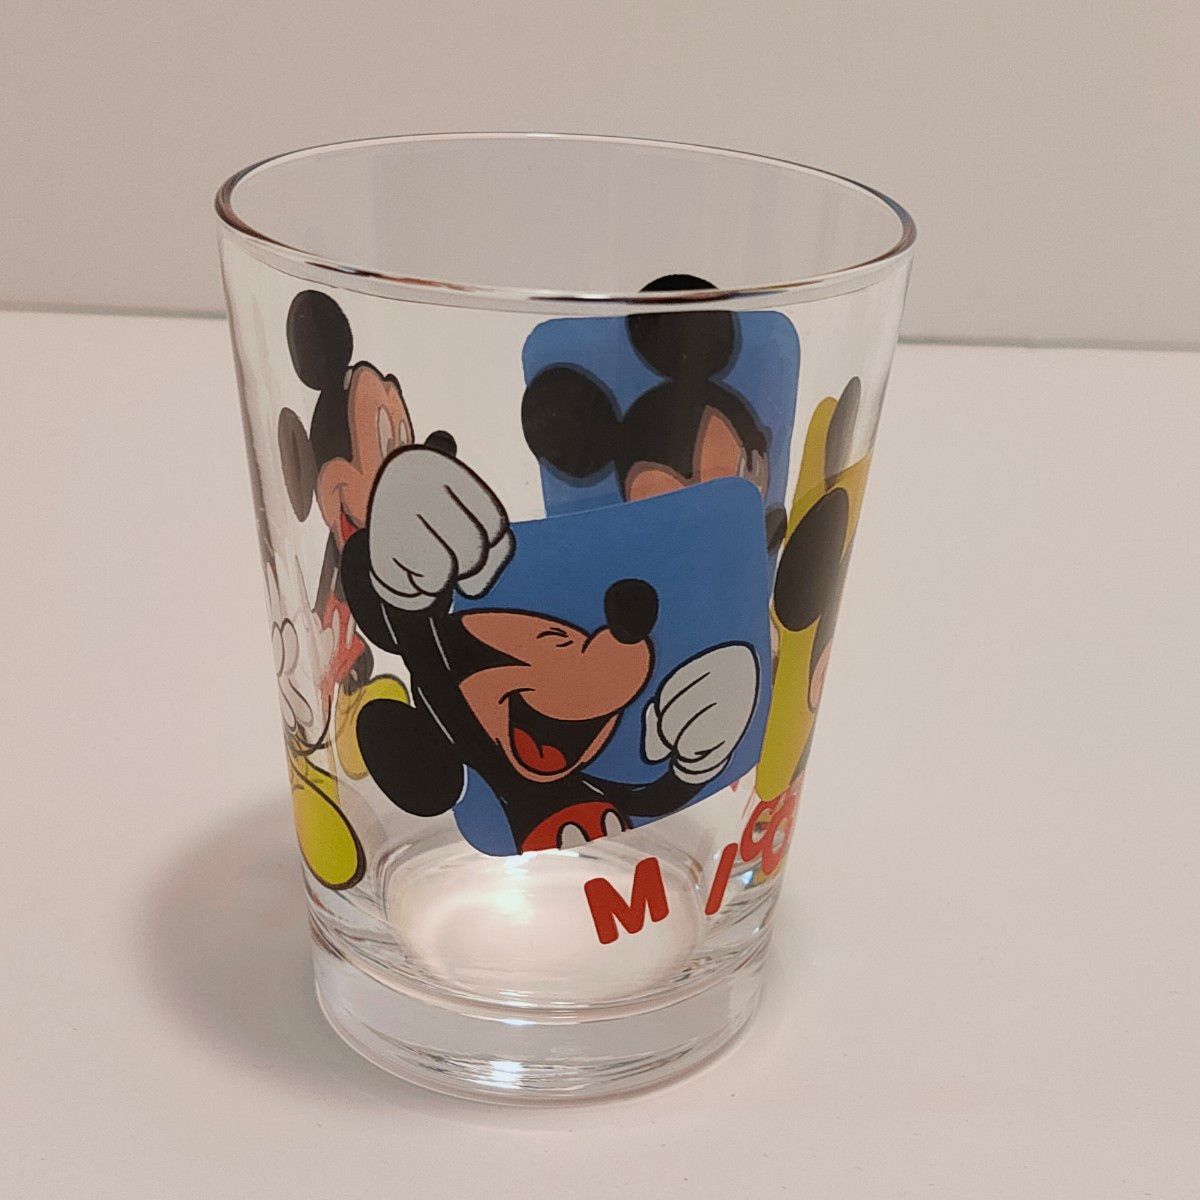 ディズニー ミッキーマウス ミニーマウス ガラスコップ 湯のみ セット グラス ペアグラス